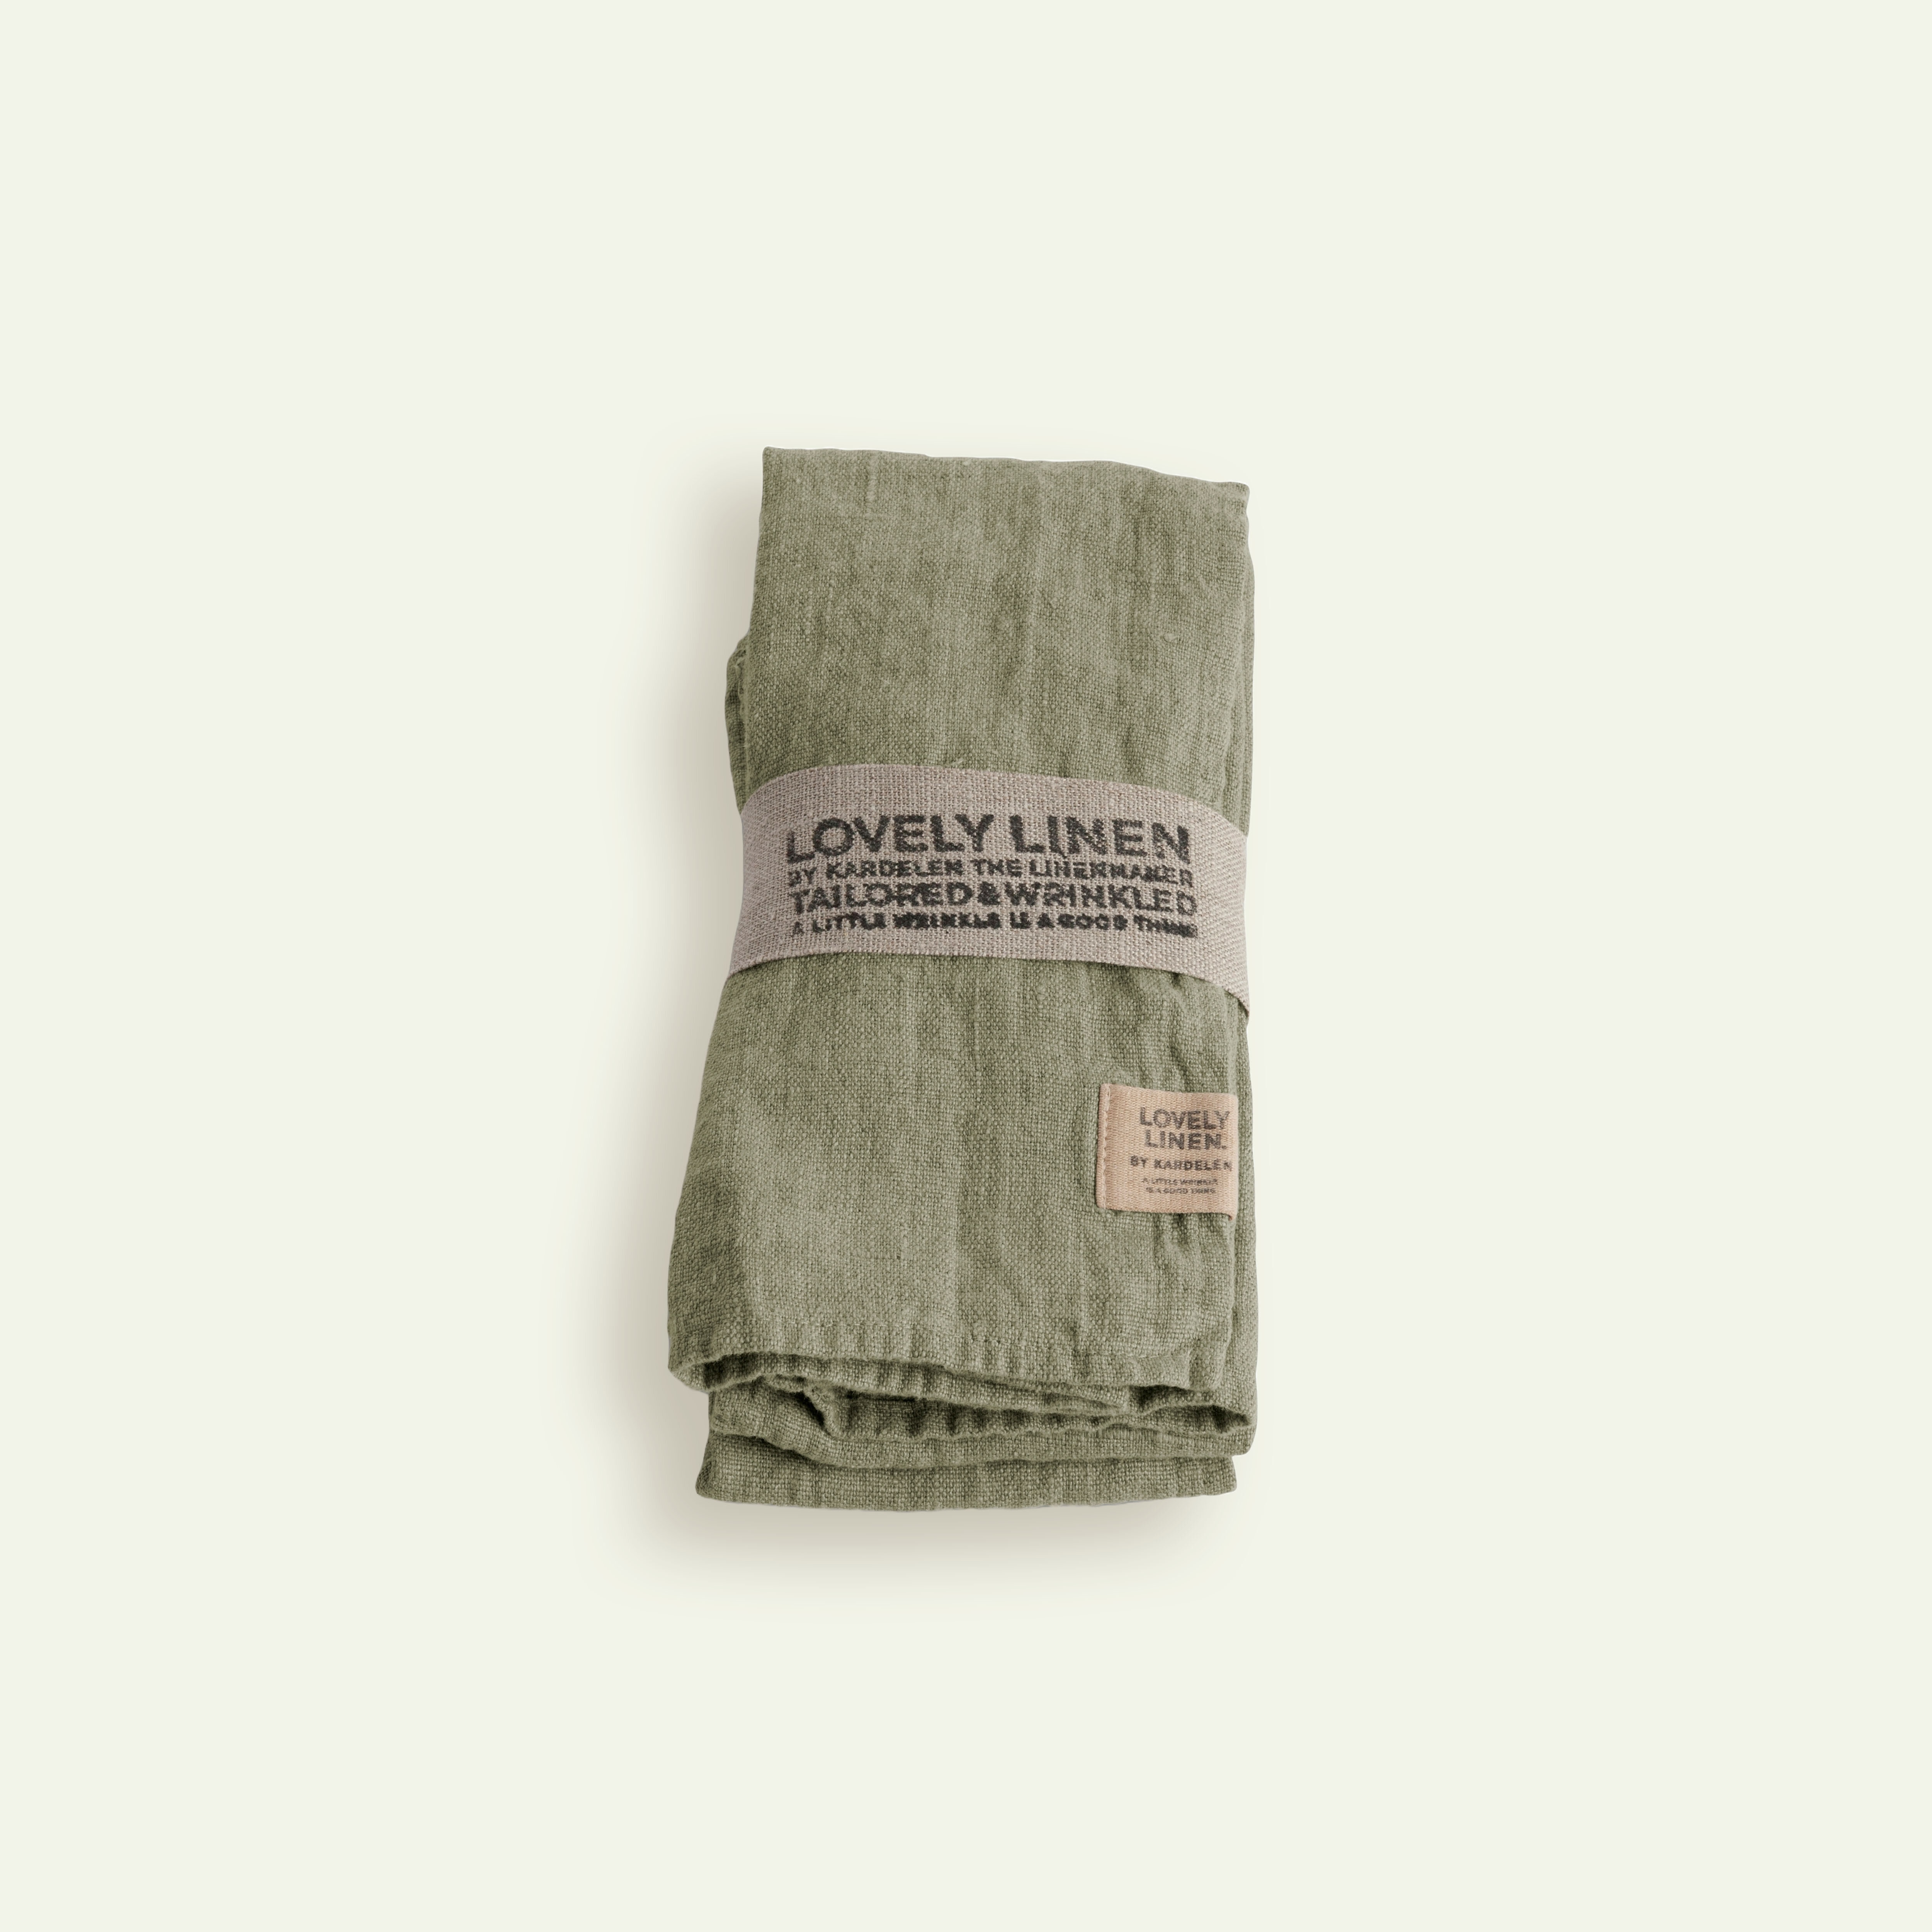 Lovely Linen Lovely serviet 45 x 45 cm 4-pack, Avocado